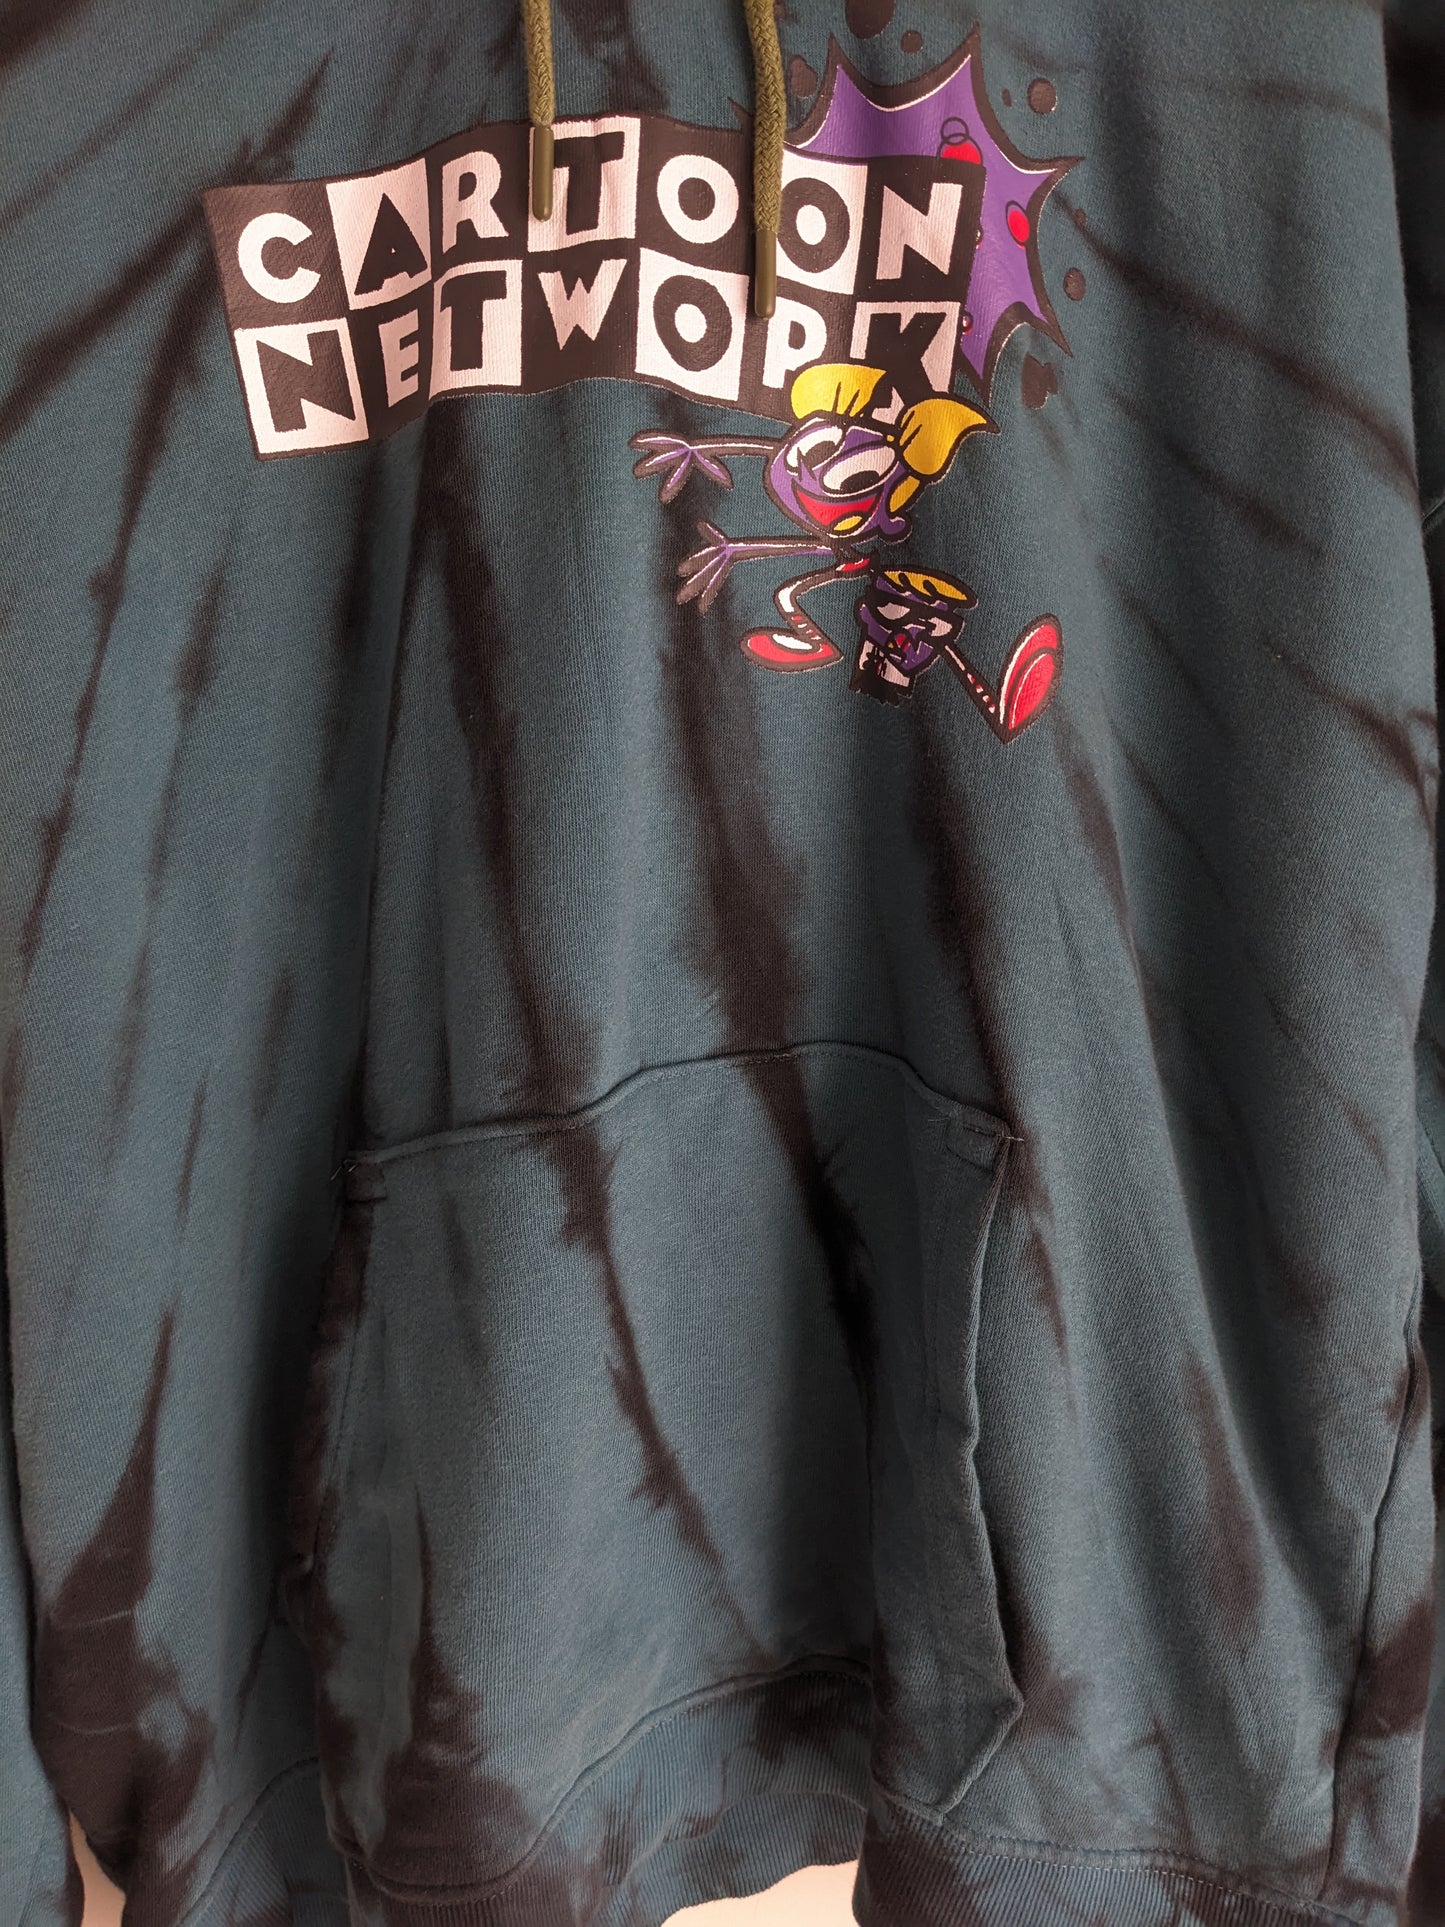 No Boundaries Cartoon Network Tie Dye Hoodie